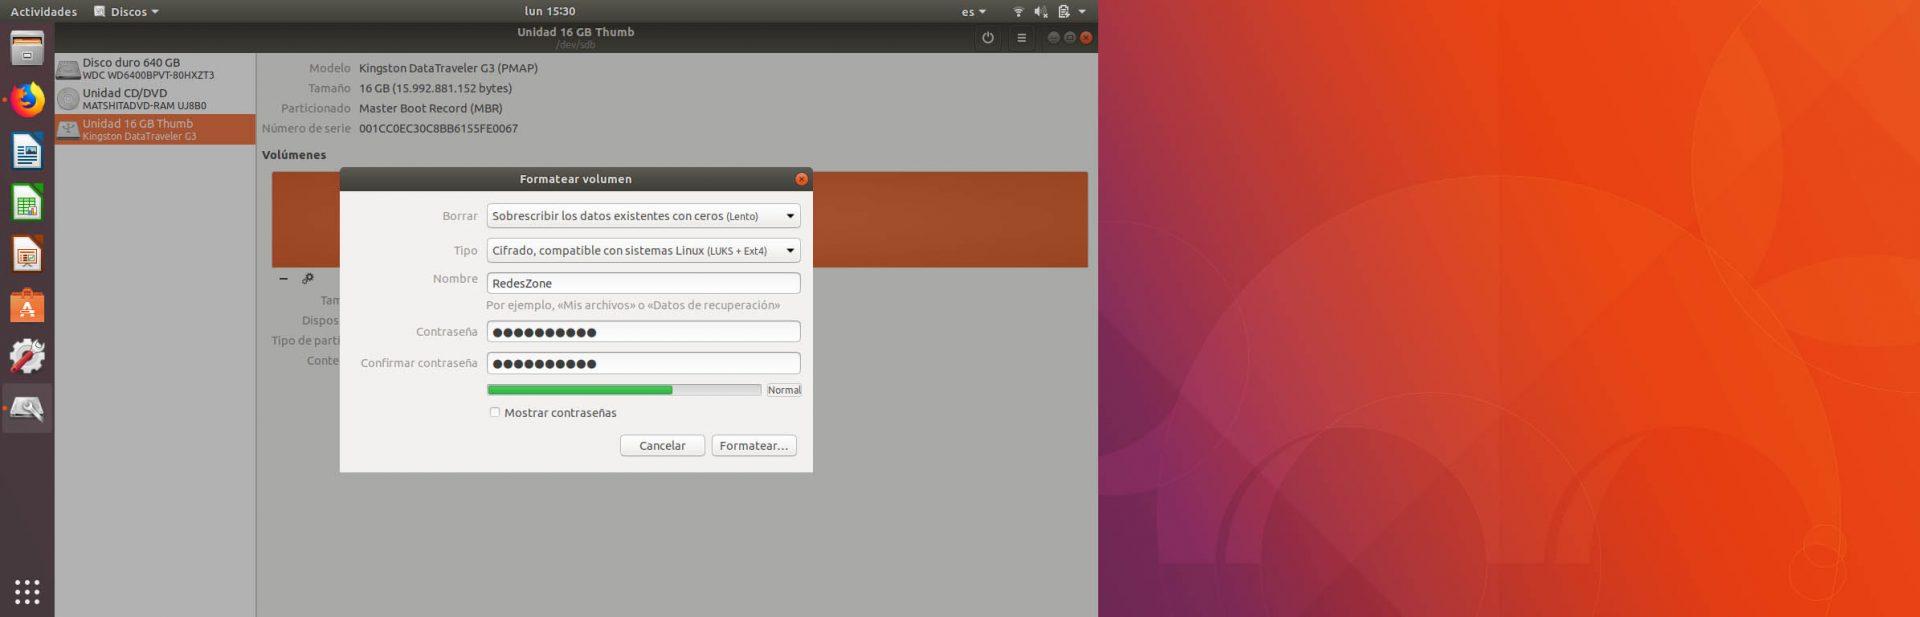 Formatear volumen en Ubuntu